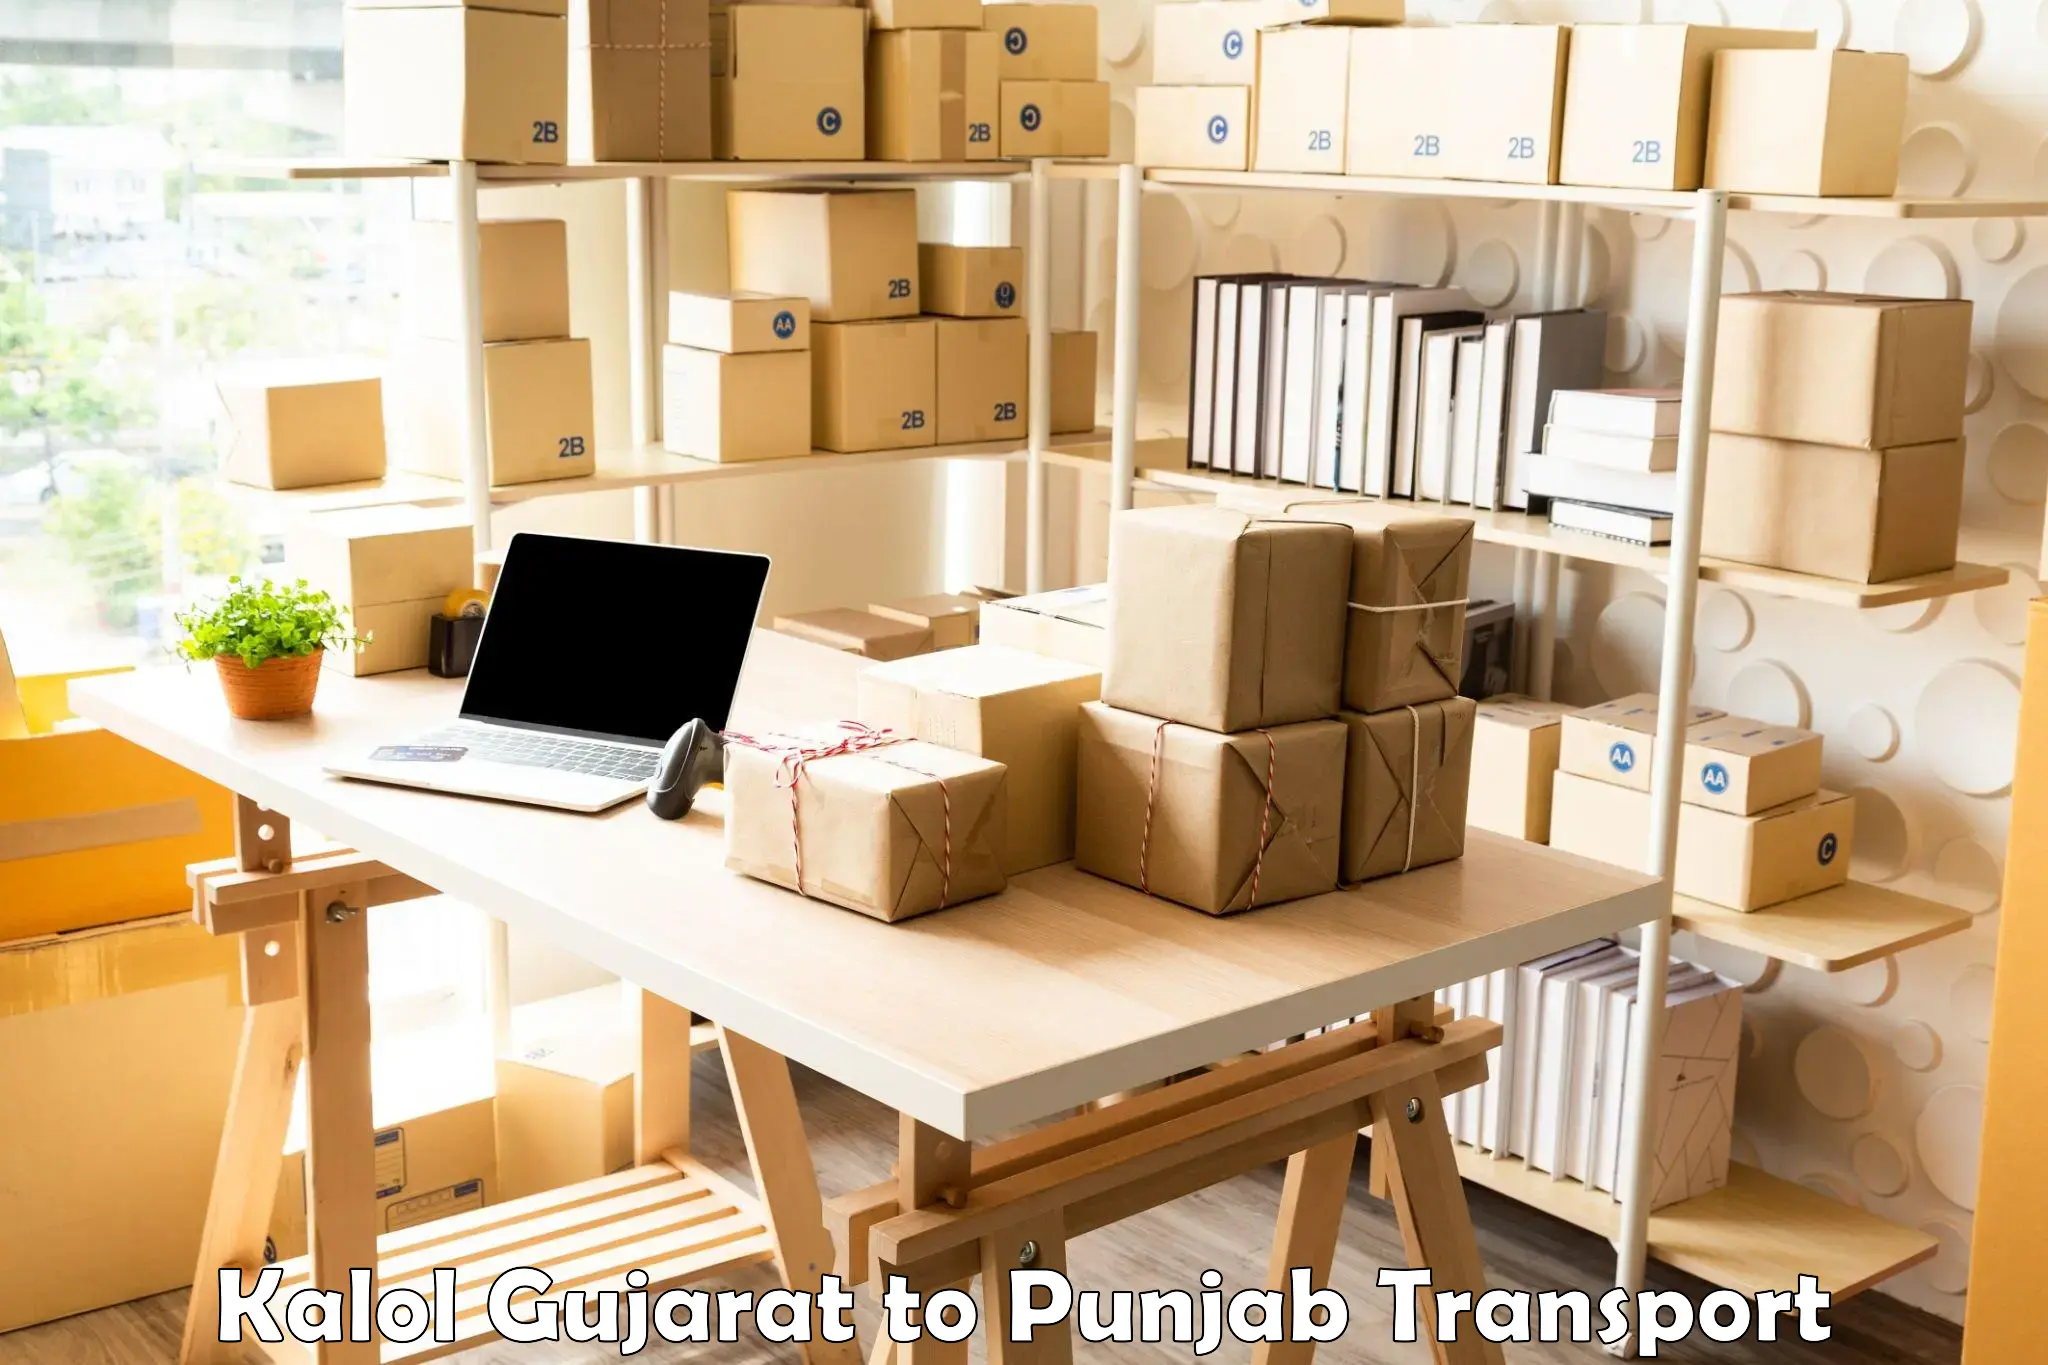 Online transport booking Kalol Gujarat to Central University of Punjab Bathinda